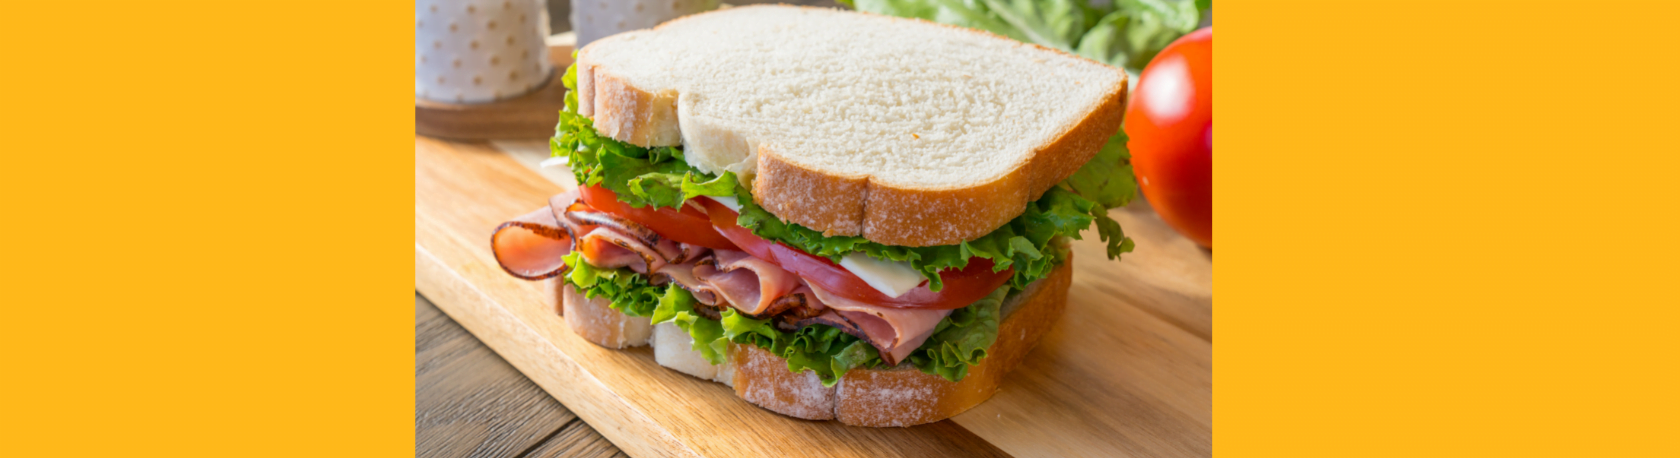 ¿Sabes qué tienen en común las palabras 'sandwich', 'América', 'nicotina' y 'boicot'? - Easy Español